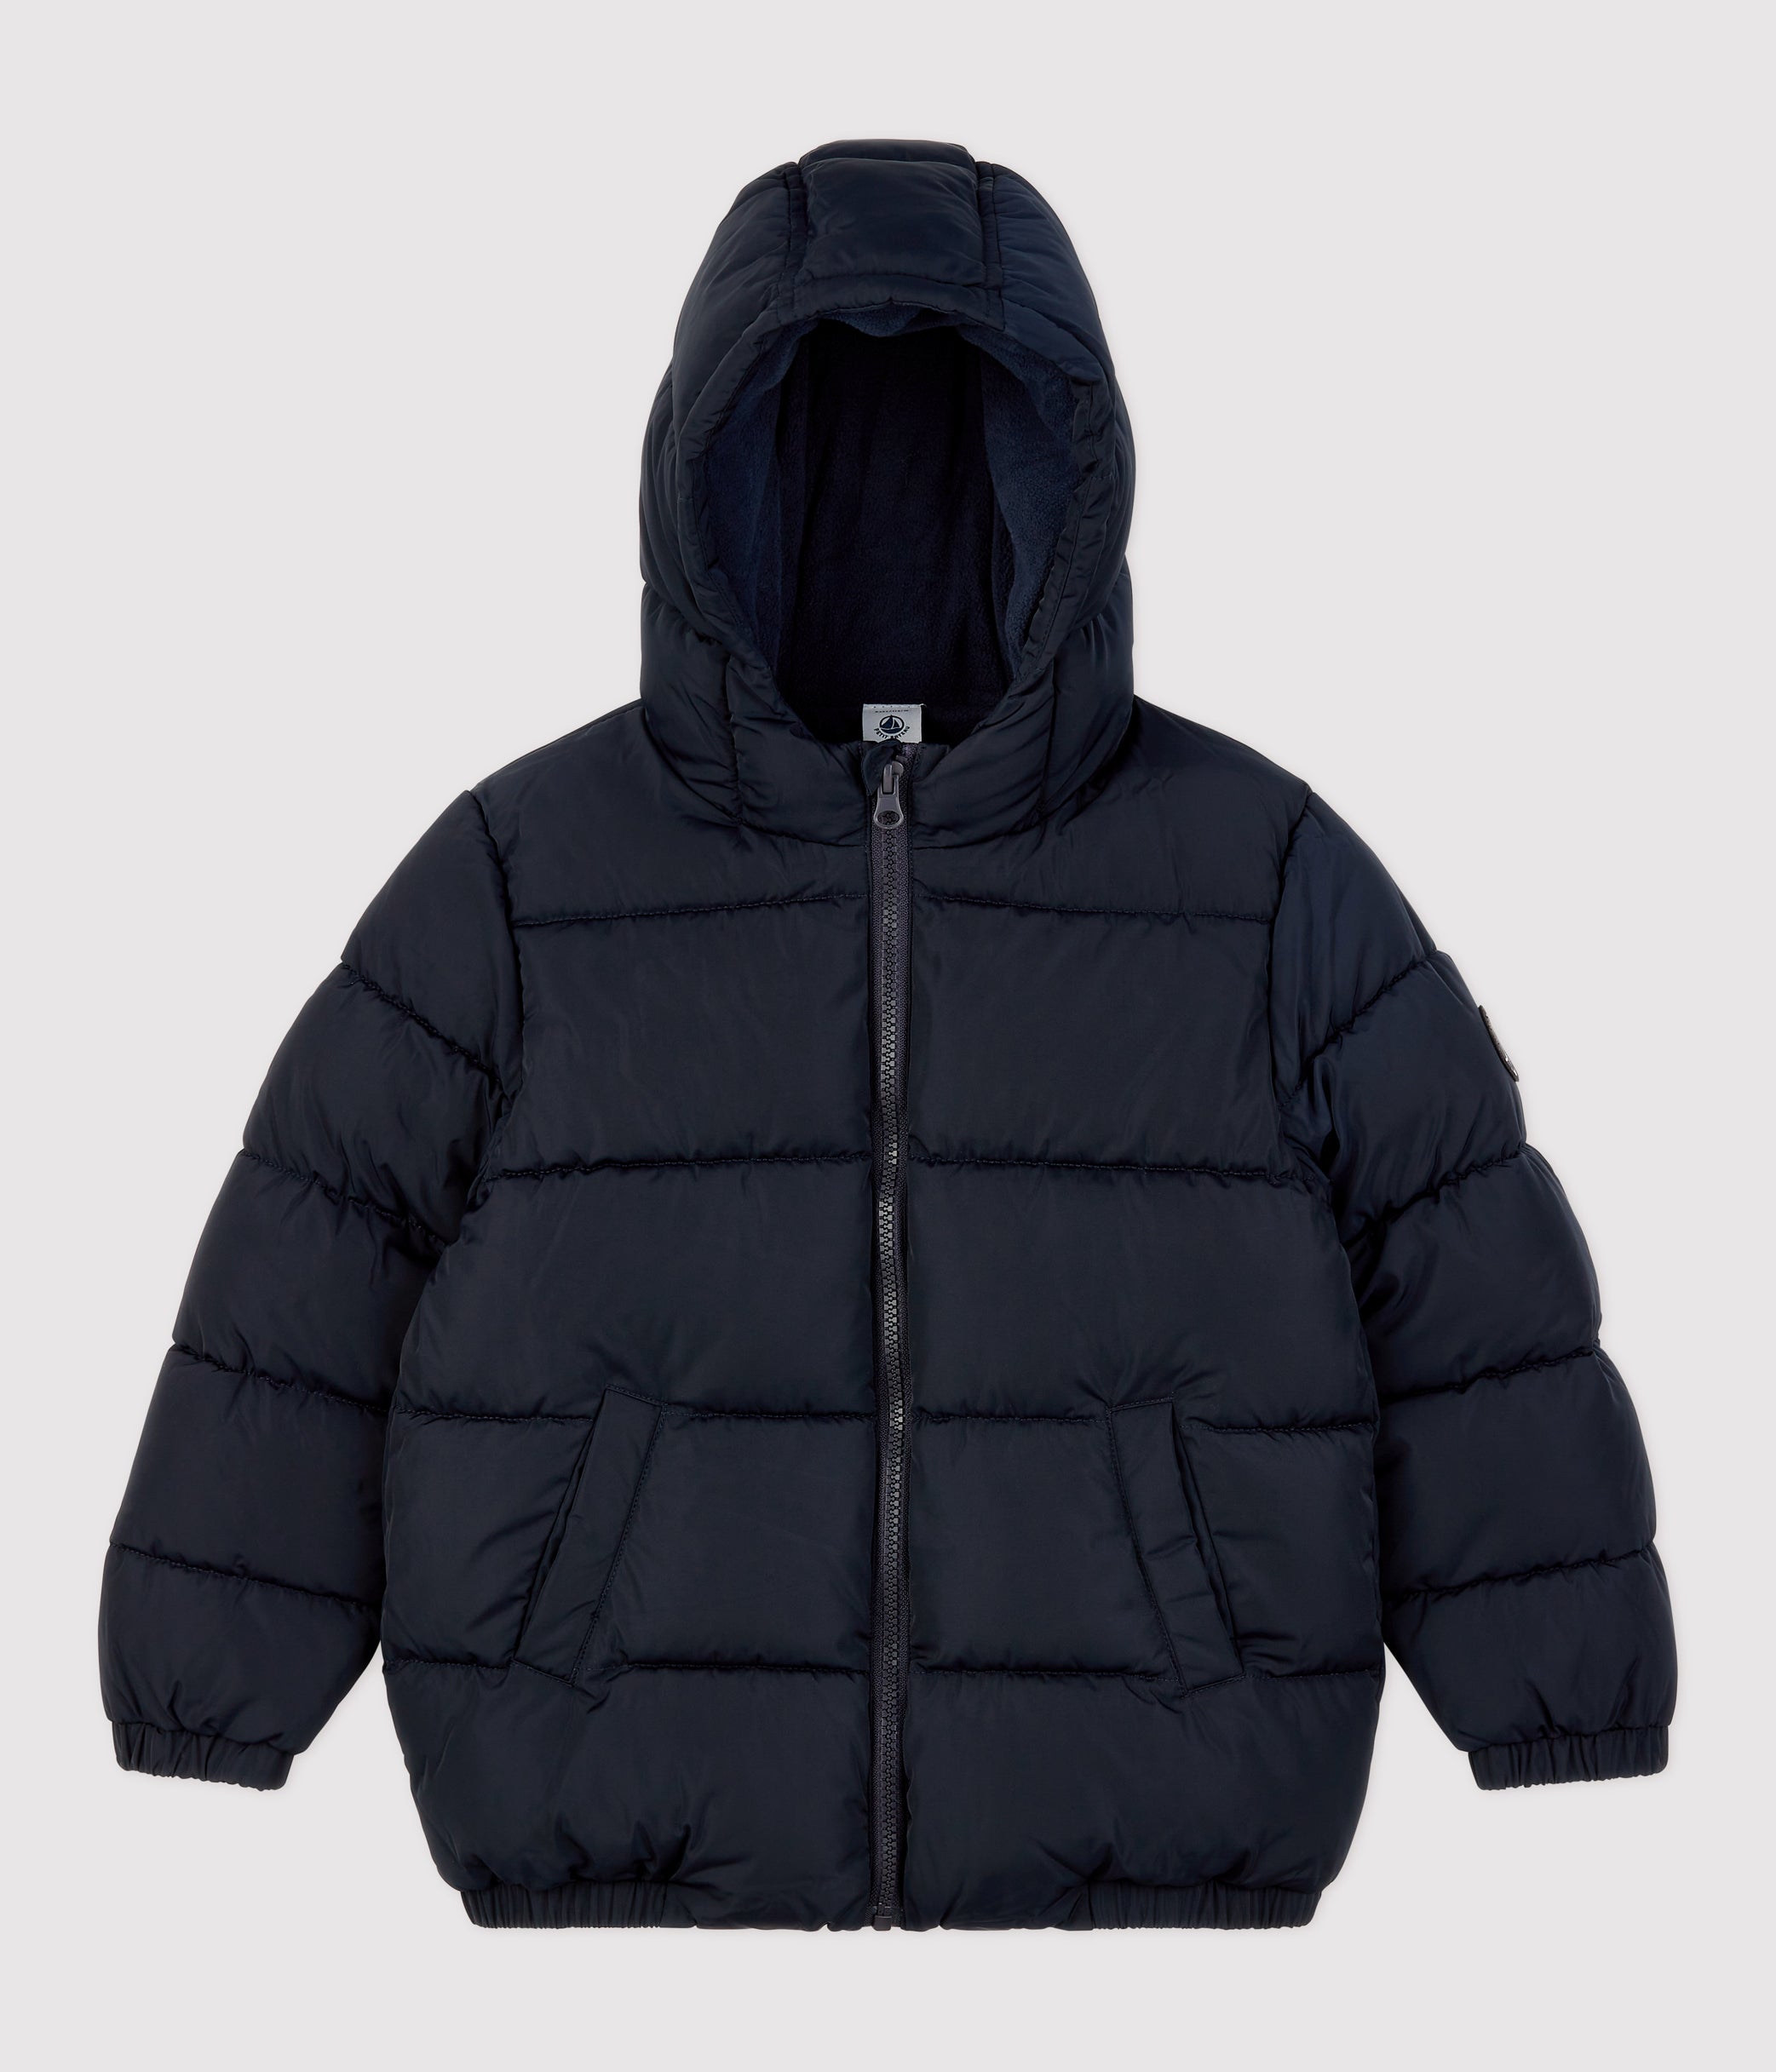 中綿入りフード付きジャケット | ベビー服・子供服通販のPETTIT BATEAU 